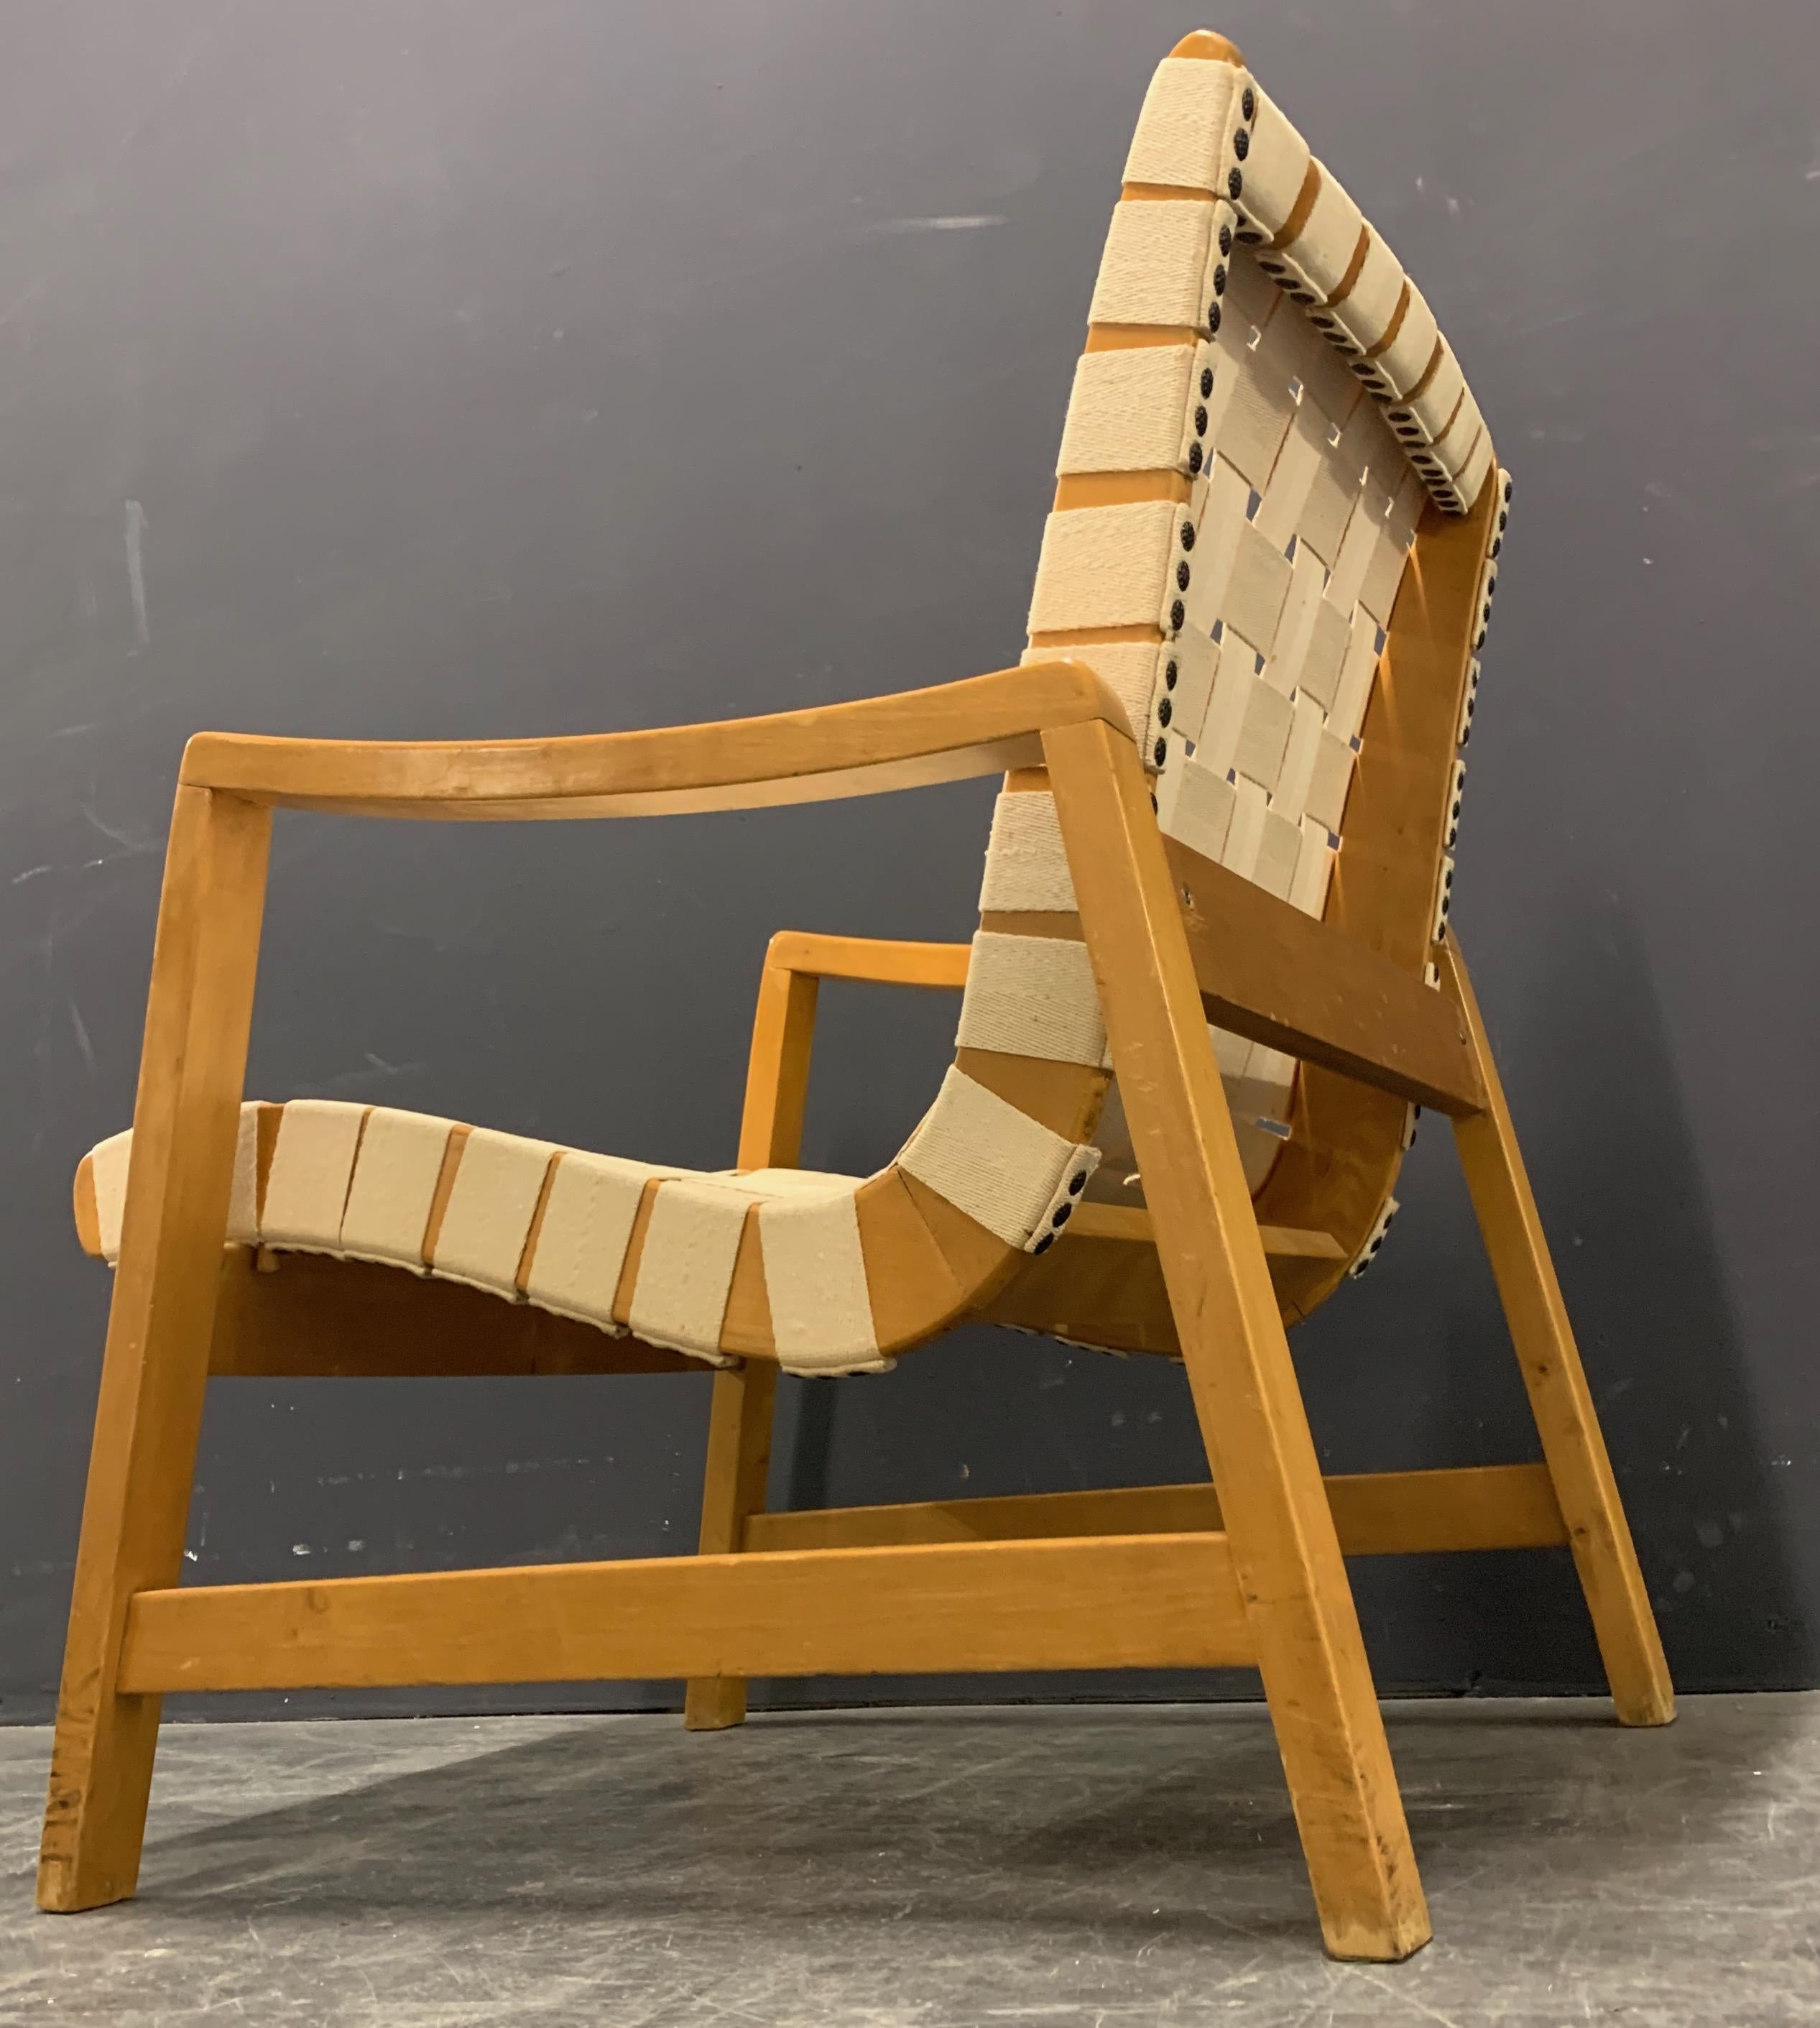 Jens Risom Lounge Chair für Knoll International. Gurtband erneuert. Modell-Nr. 652.

MIT SITZ IN HAMBURG